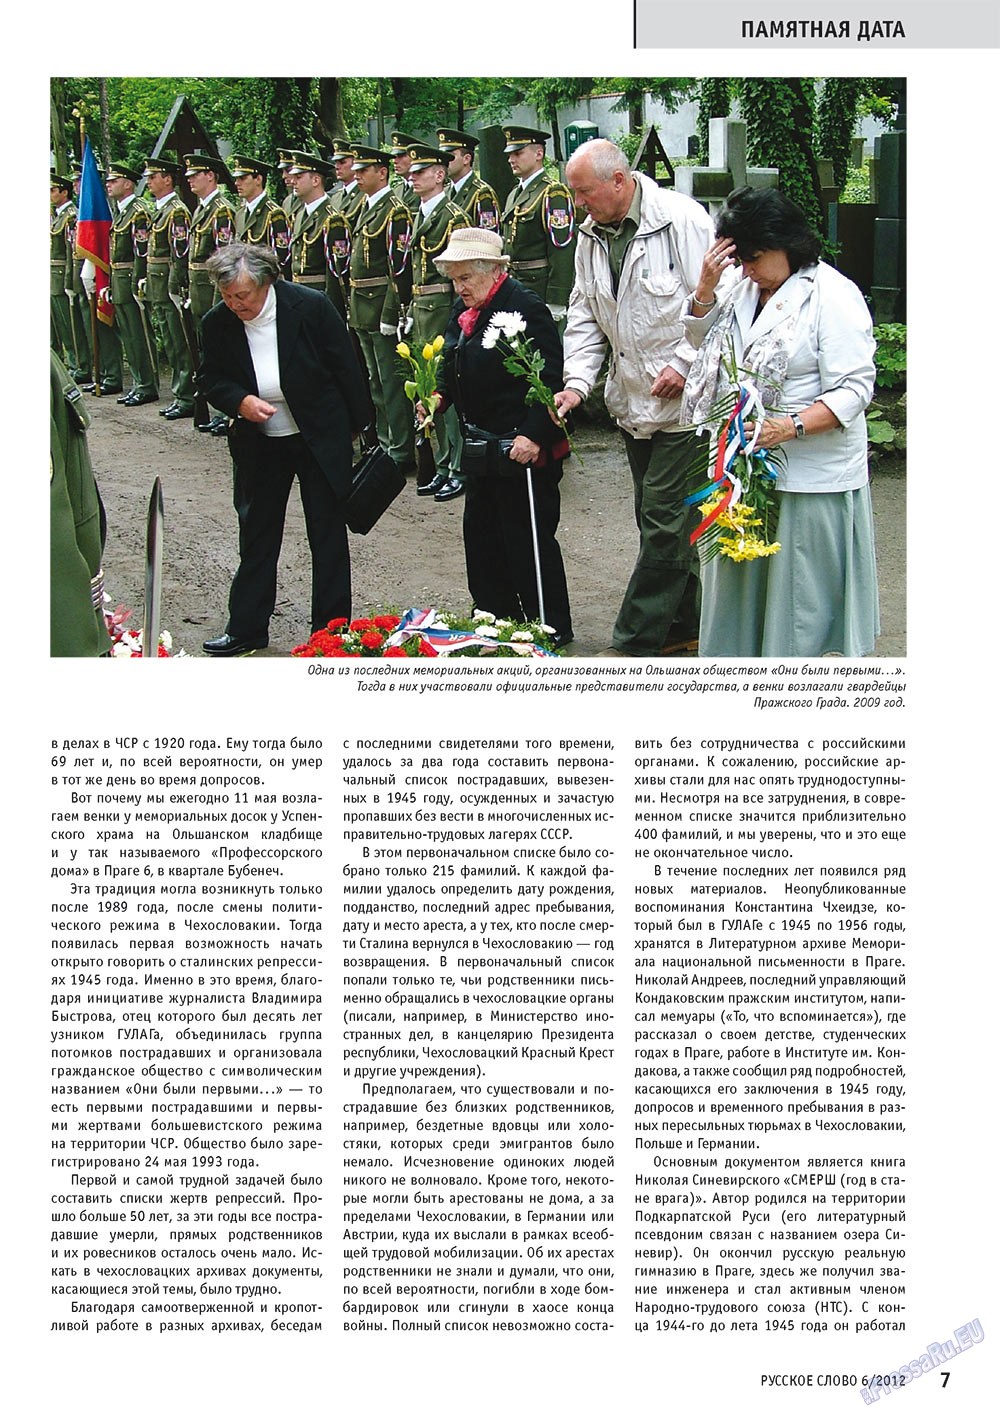 Русское слово, журнал. 2012 №6 стр.7